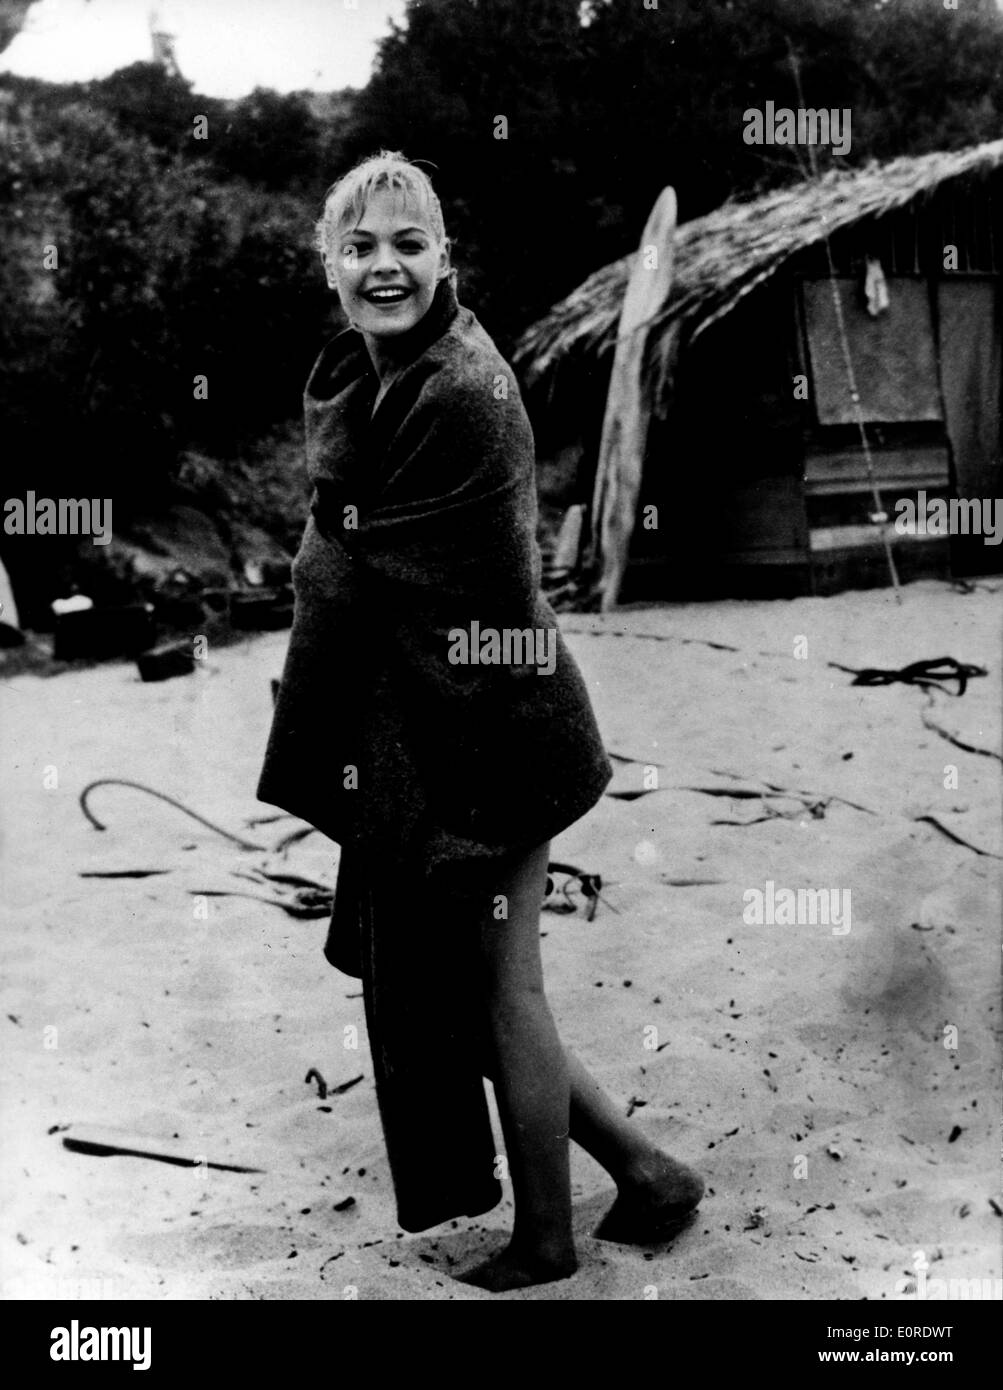 31 mars 1959 - Hollywood, Californie, États-Unis - Actrice SANDRA DEE, la beauté blonde qui a attiré un large public adolescent dans les années 60 avec des films comme ''Gidget'' et ''Tammy et le docteur'' et avait un intitulé le mariage avec la chanteuse de Bobby Darin, est mort le 20 février 2005 à Los Angeles. Elle avait 62 ans. Banque D'Images